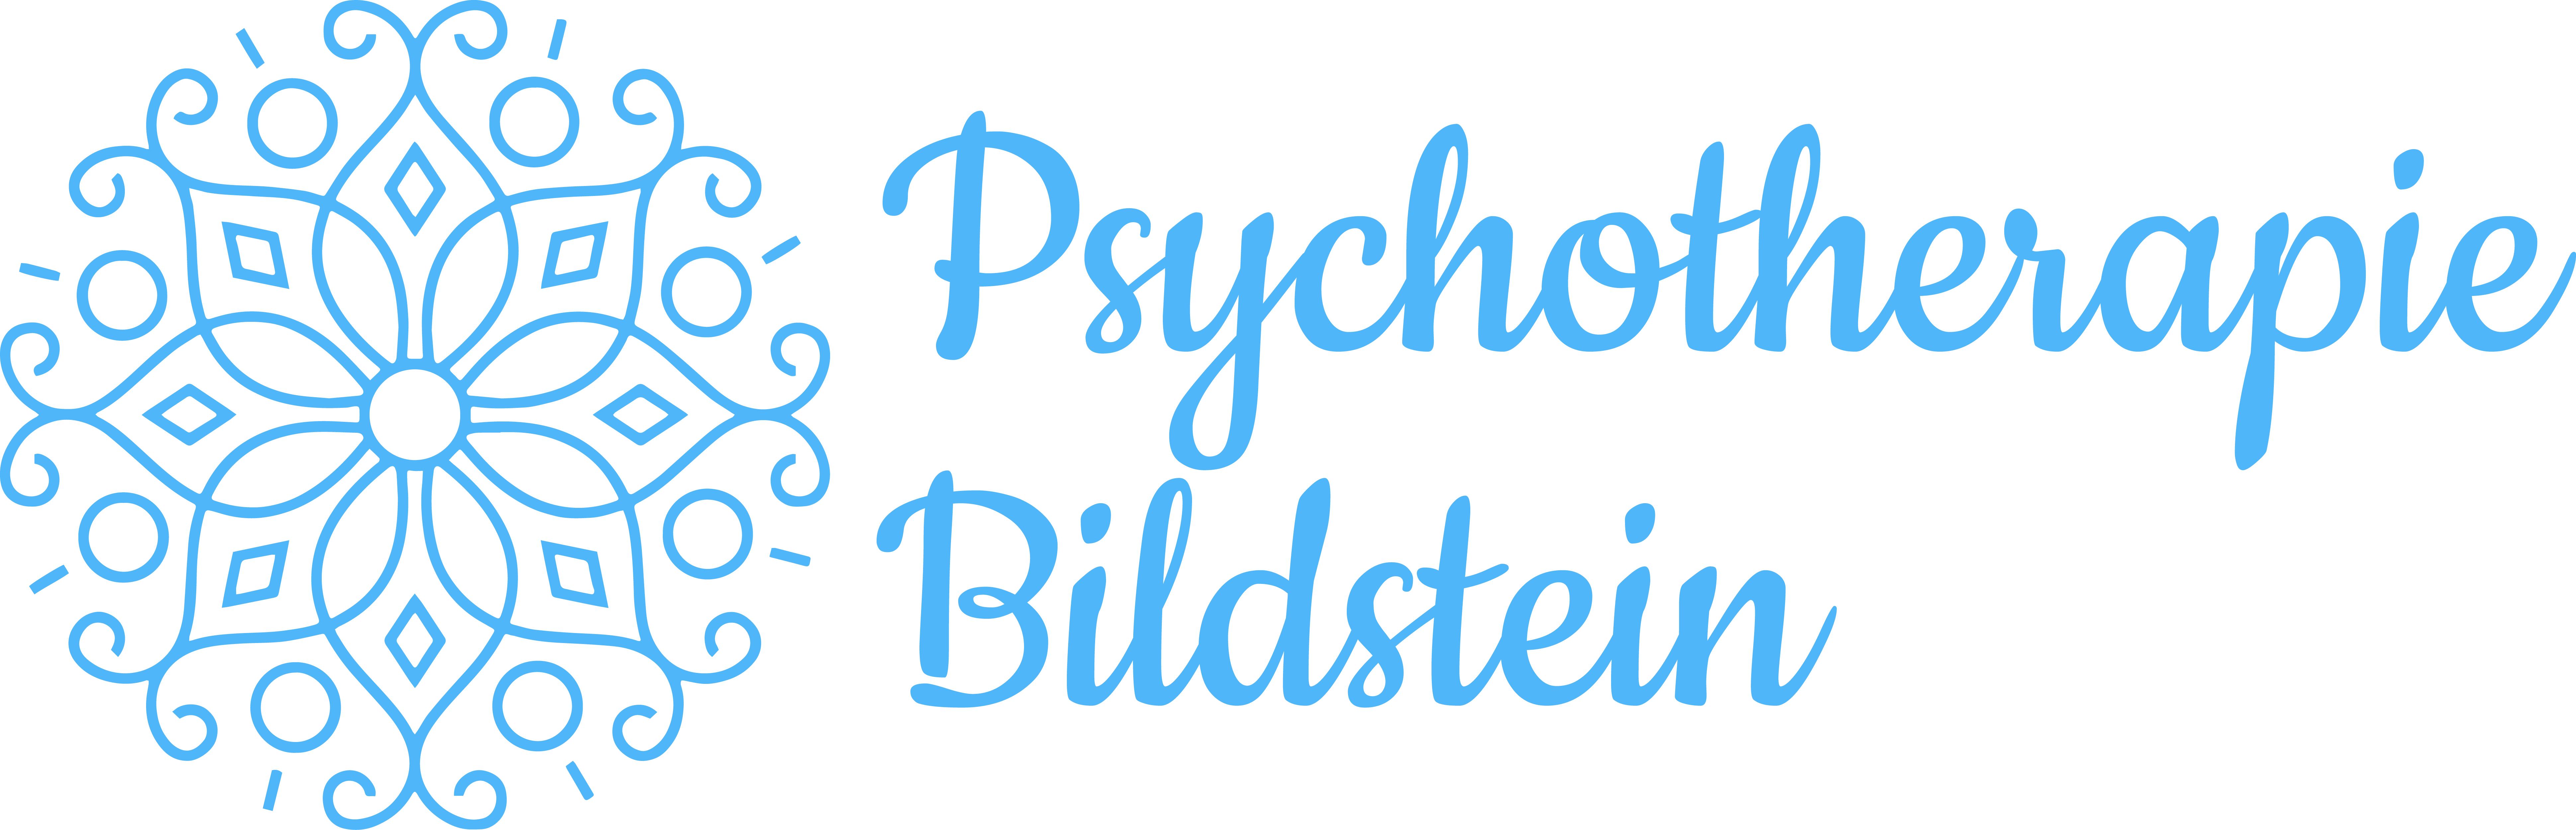 Psychotherapie Bildstein